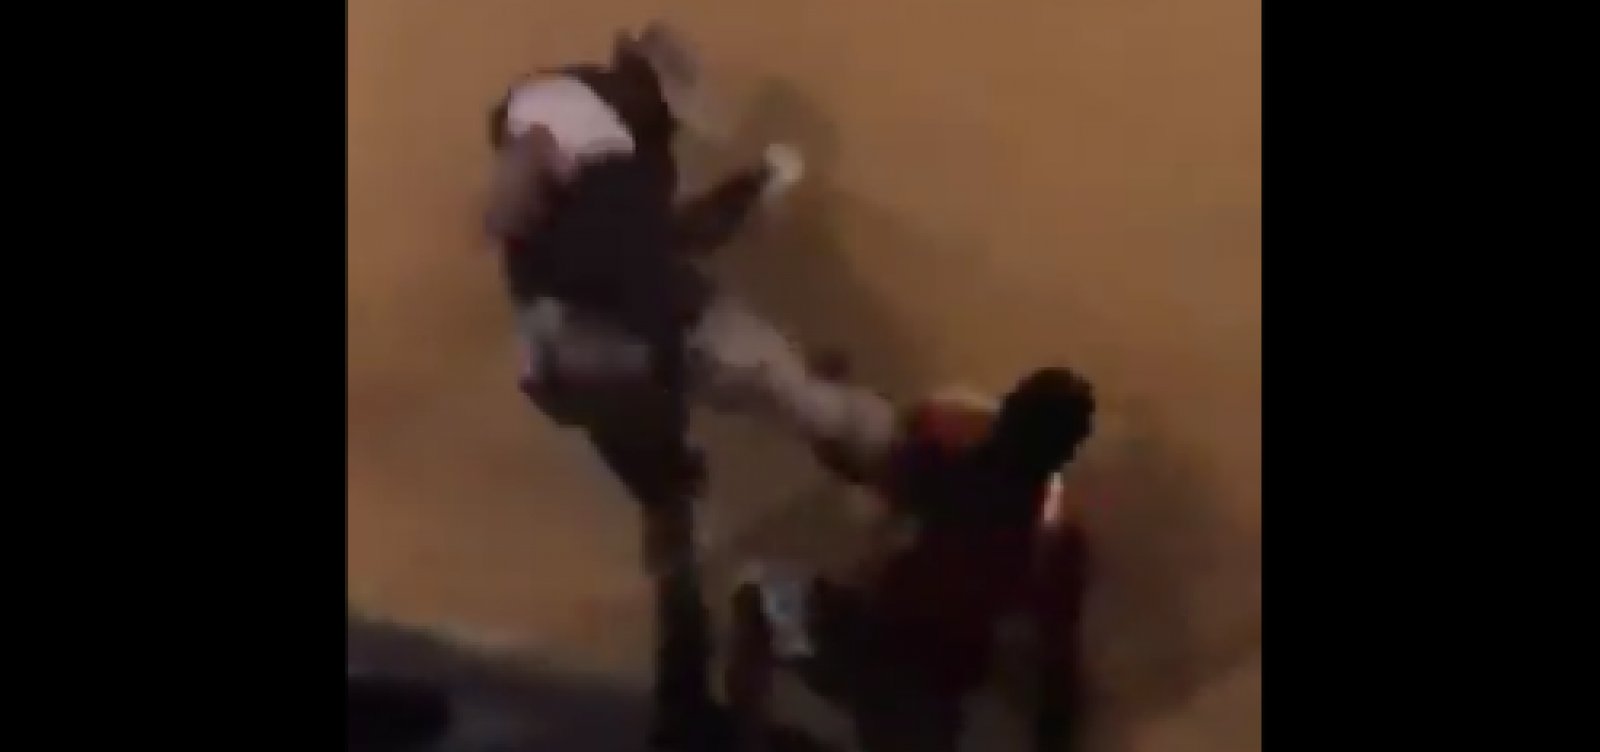 [Policial é flagrado chutando rosto de homem durante abordagem; veja vídeo]